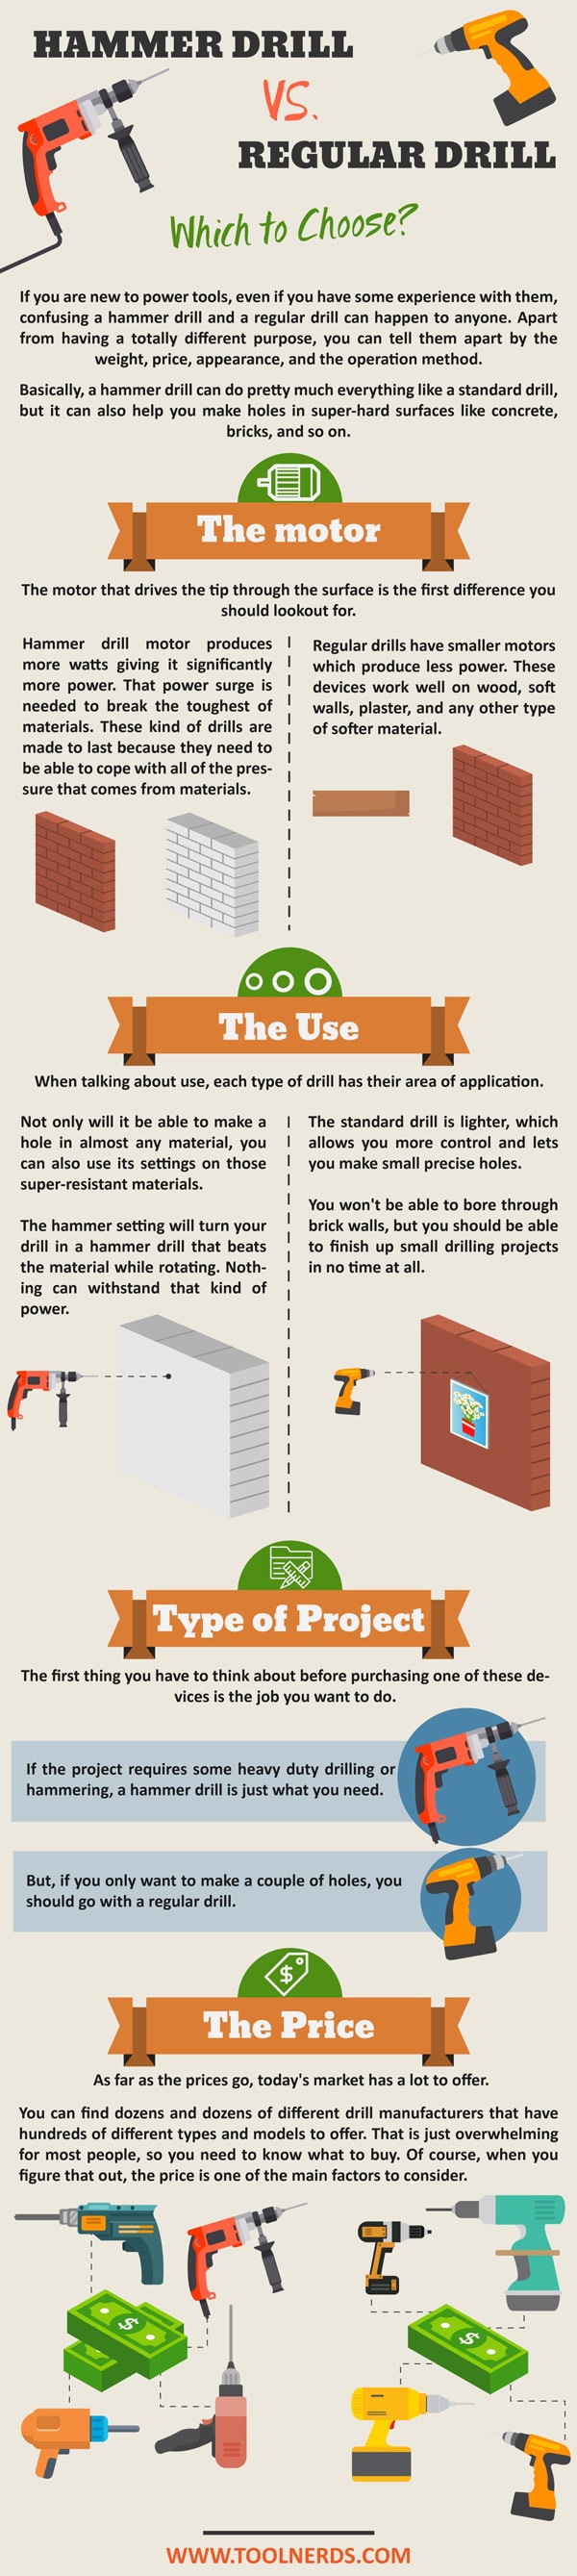 Hammer Drill vs Regular Drill Infographic